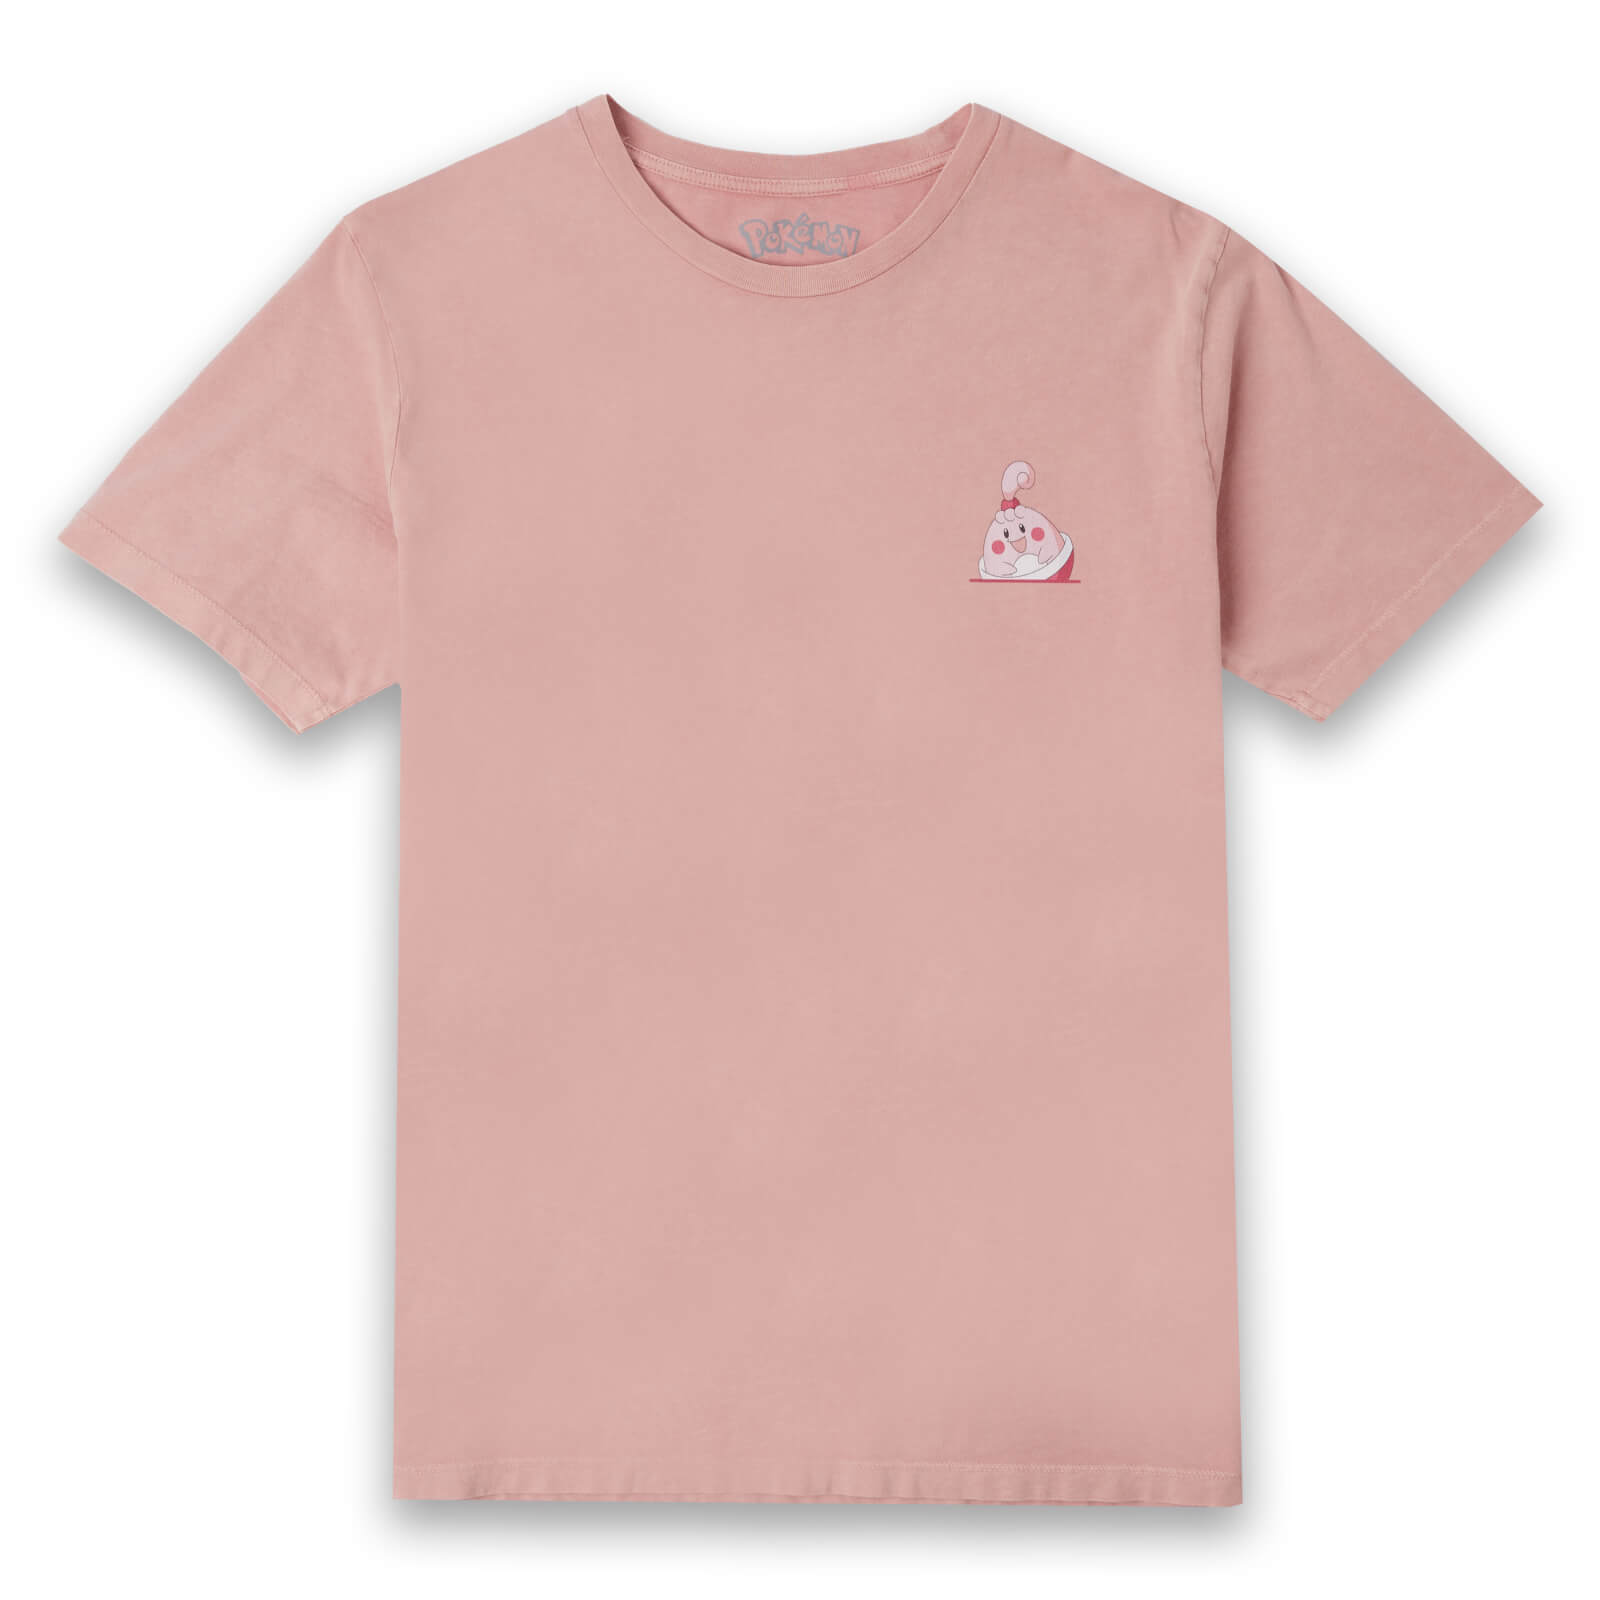 Pokémon Happiny Unisex T-Shirt - Dusty Pink - XS - Vintage Dusty Pink